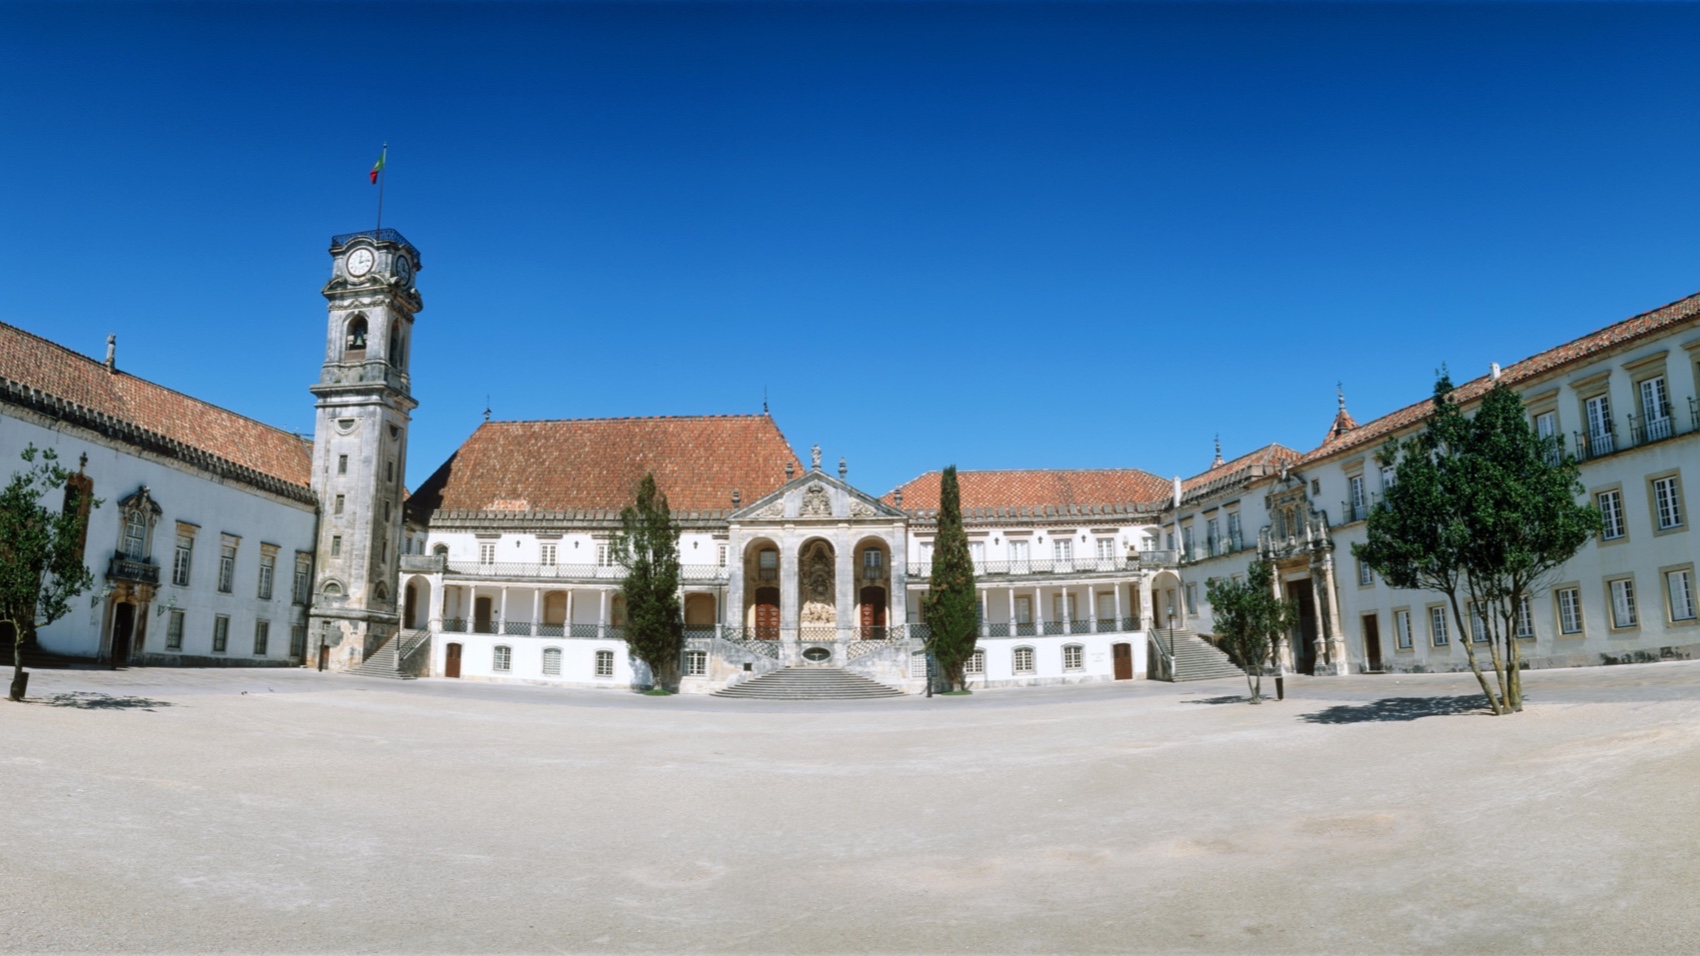 Turismo Centro de Portugal - Coimbra Conimbriga Past Immersion university